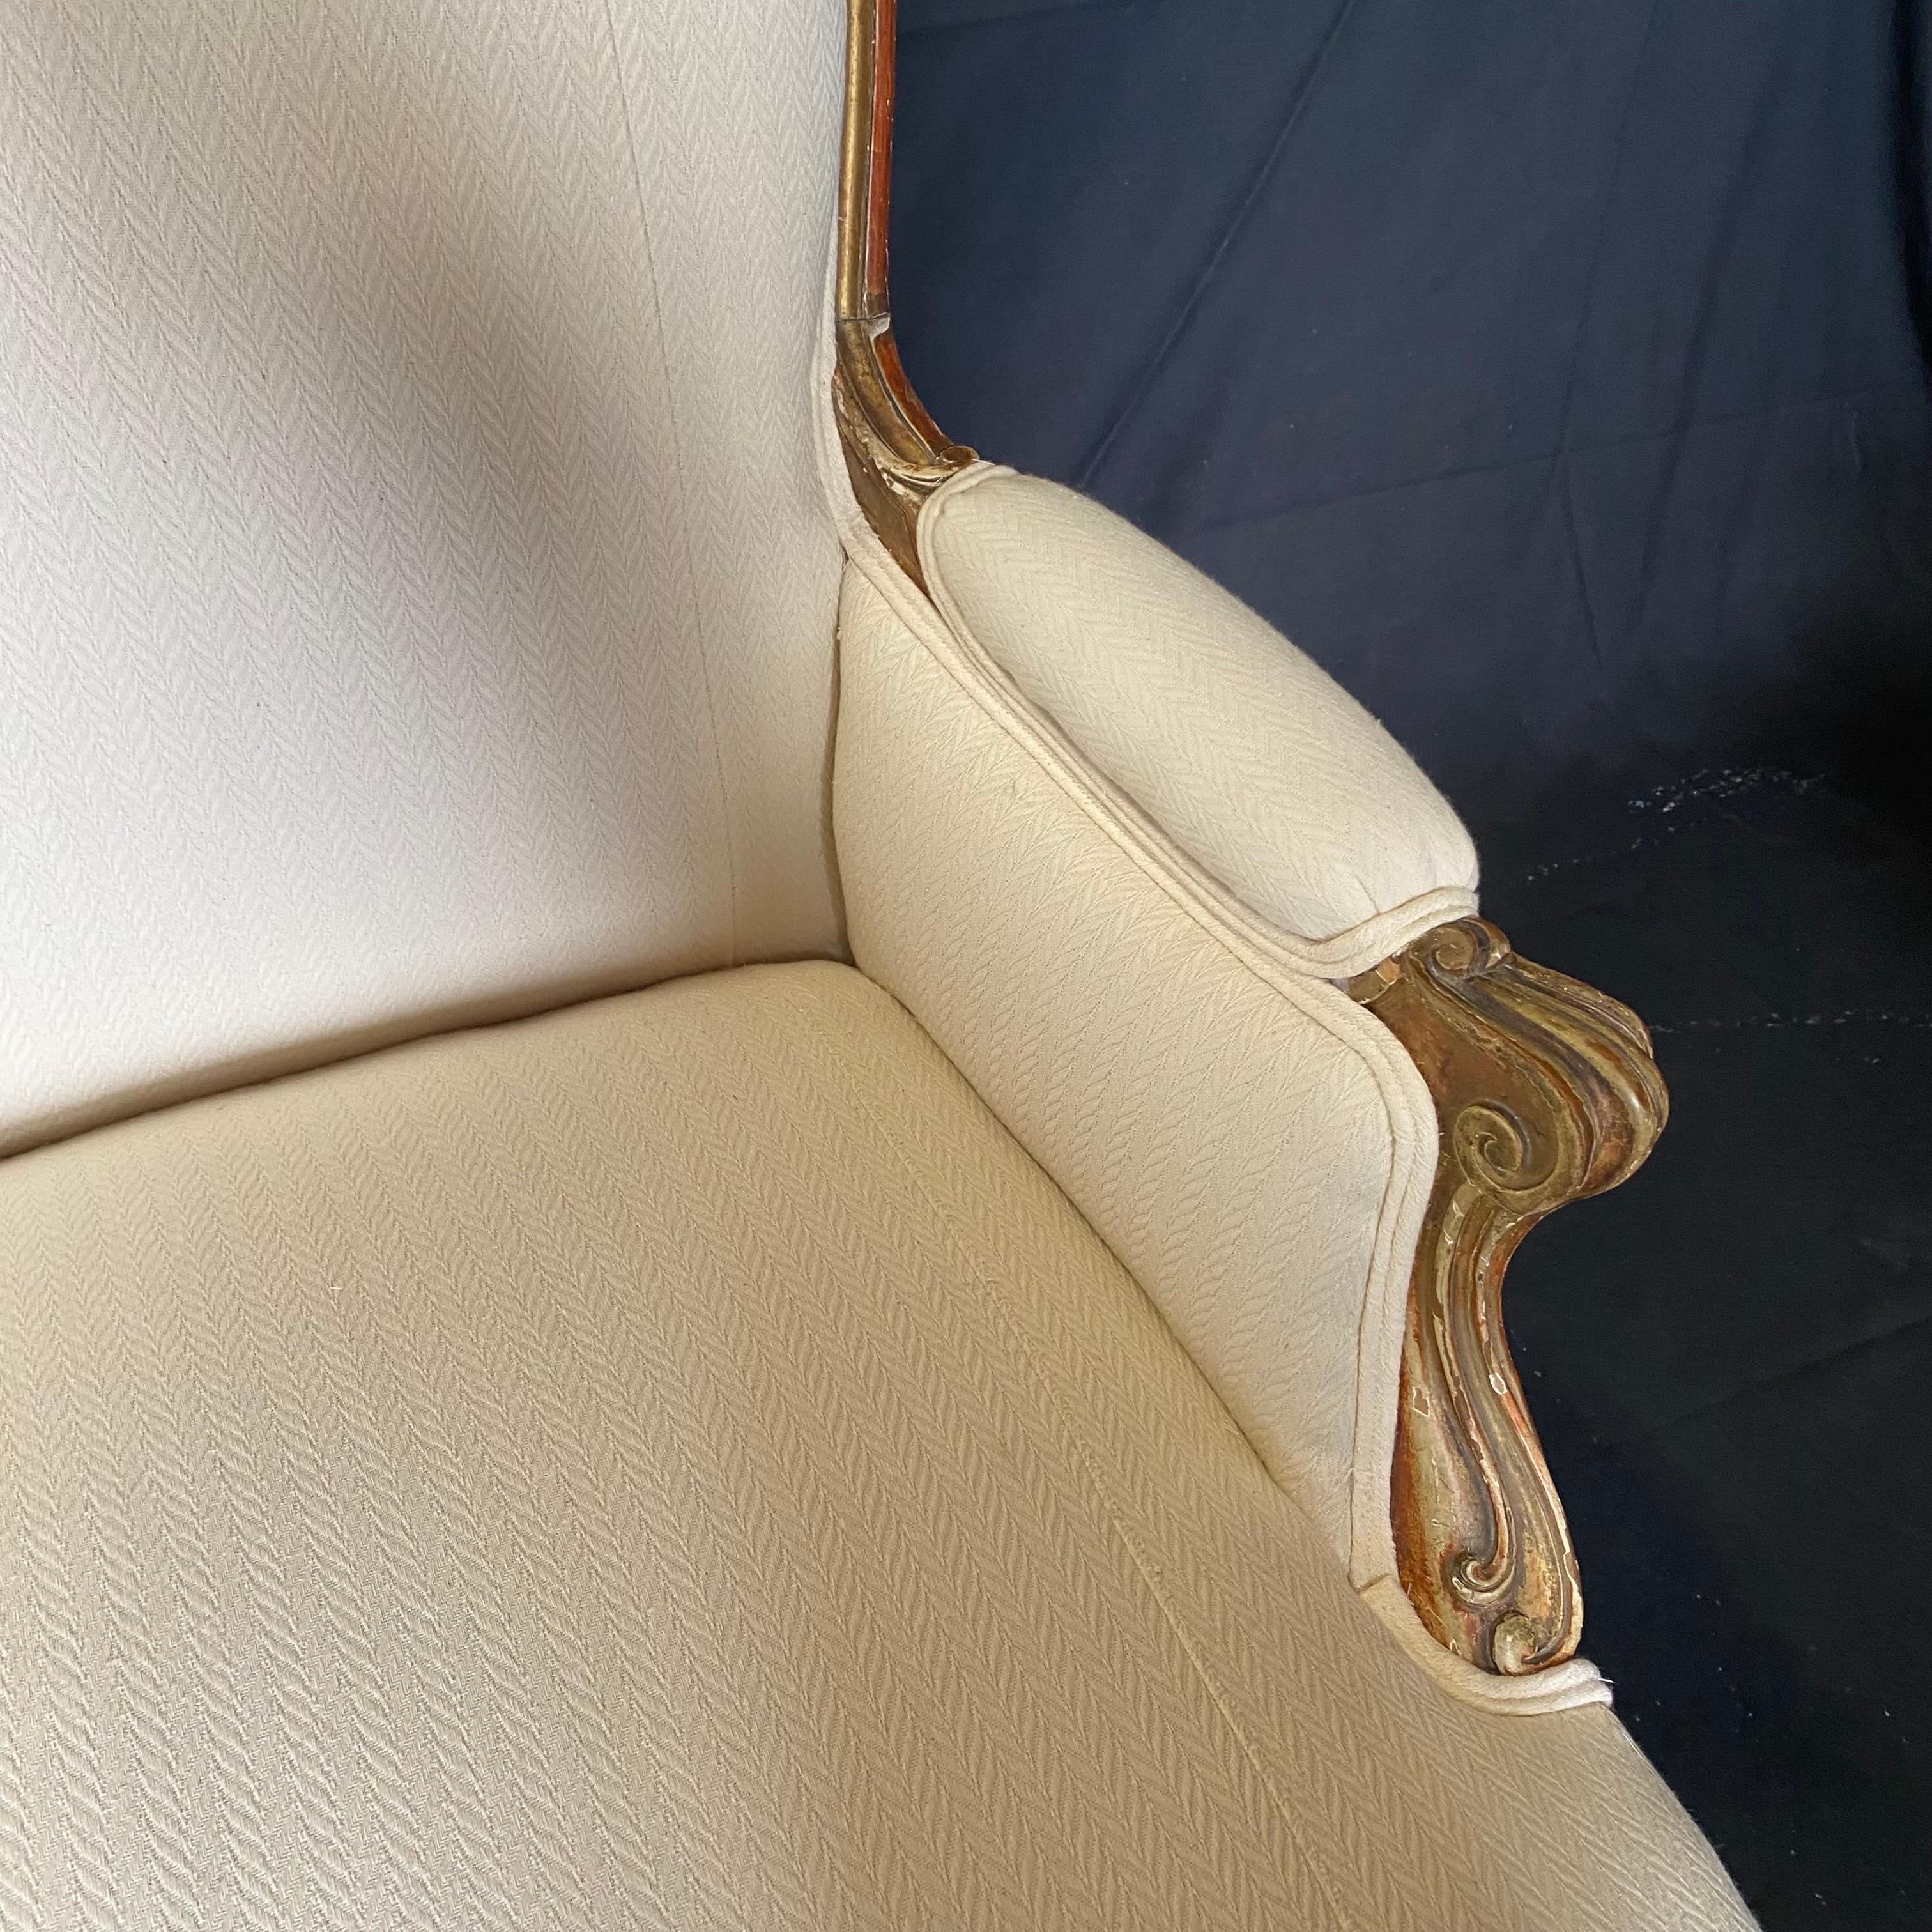 Superbe qualité, élégante canape, canapé ou sofa Louis XV français du 19ème siècle, retapissé dans un tissu crème neutre.   Il possède un cadre en bois doré magnifiquement façonné avec un style rococo fluide, une façade serpentine et des pieds